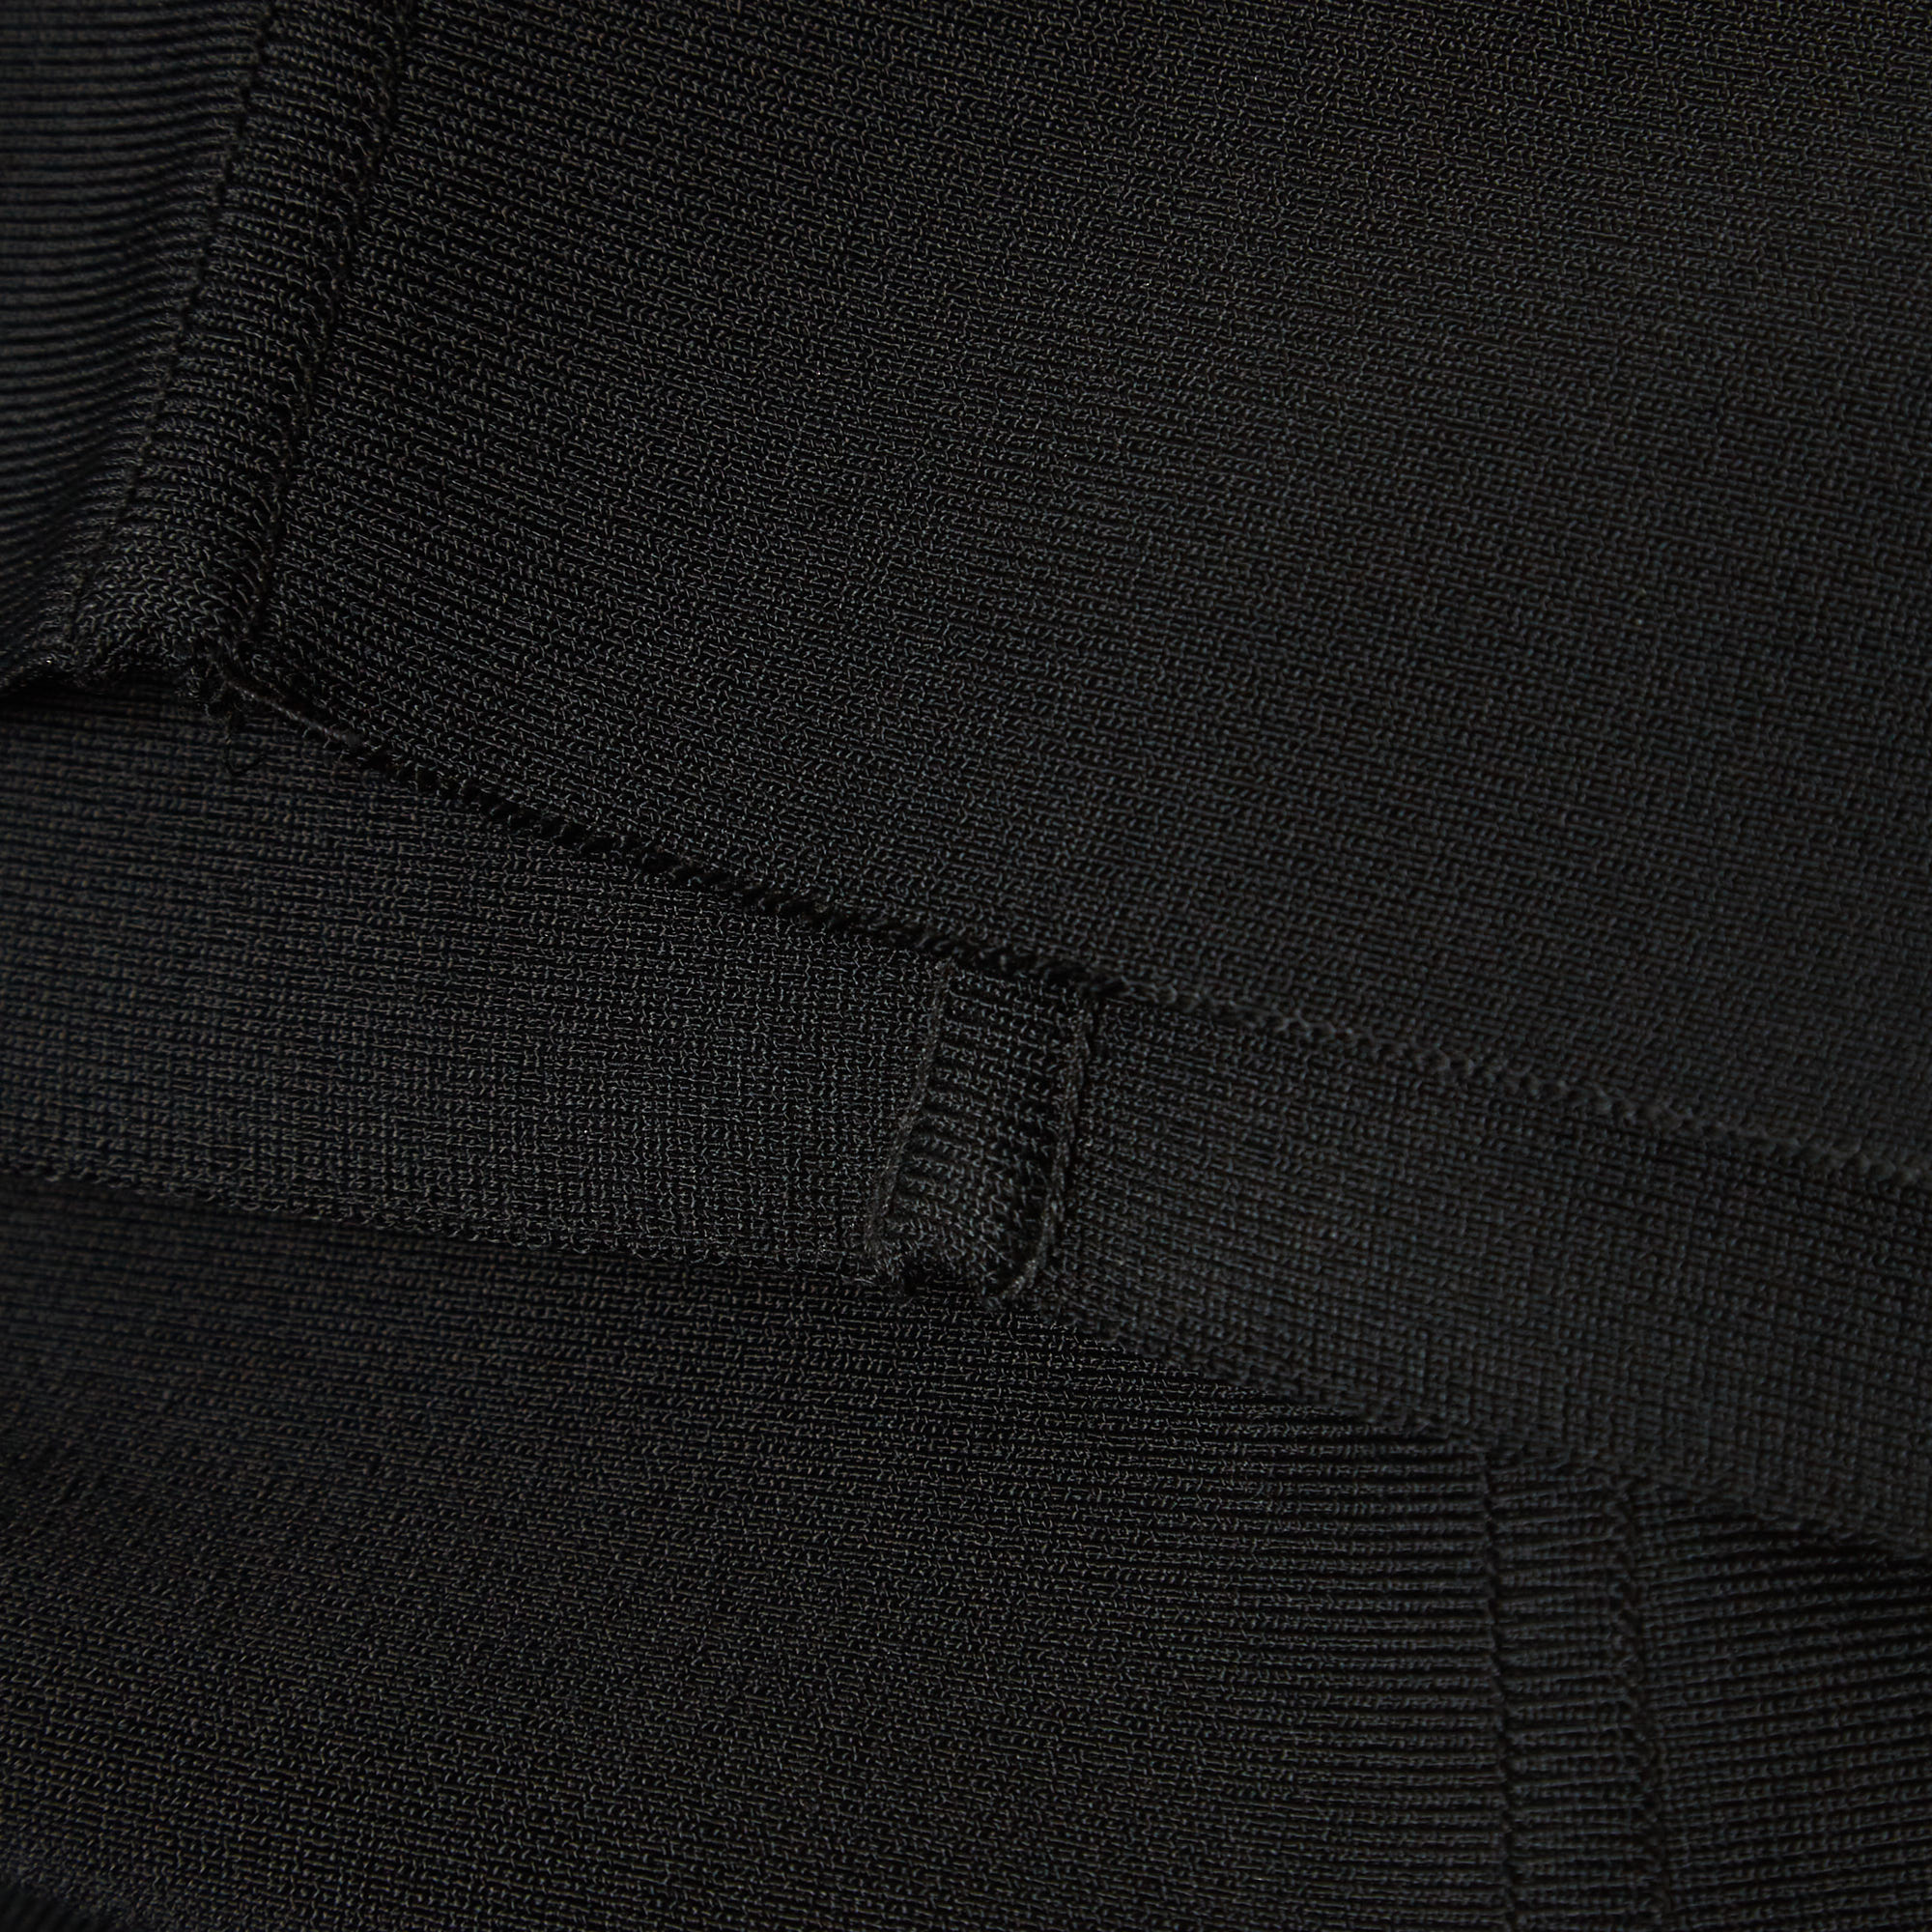 Herve L Leroux Vintage Black Stretch Knit Sleeveless Bodycon Dress S